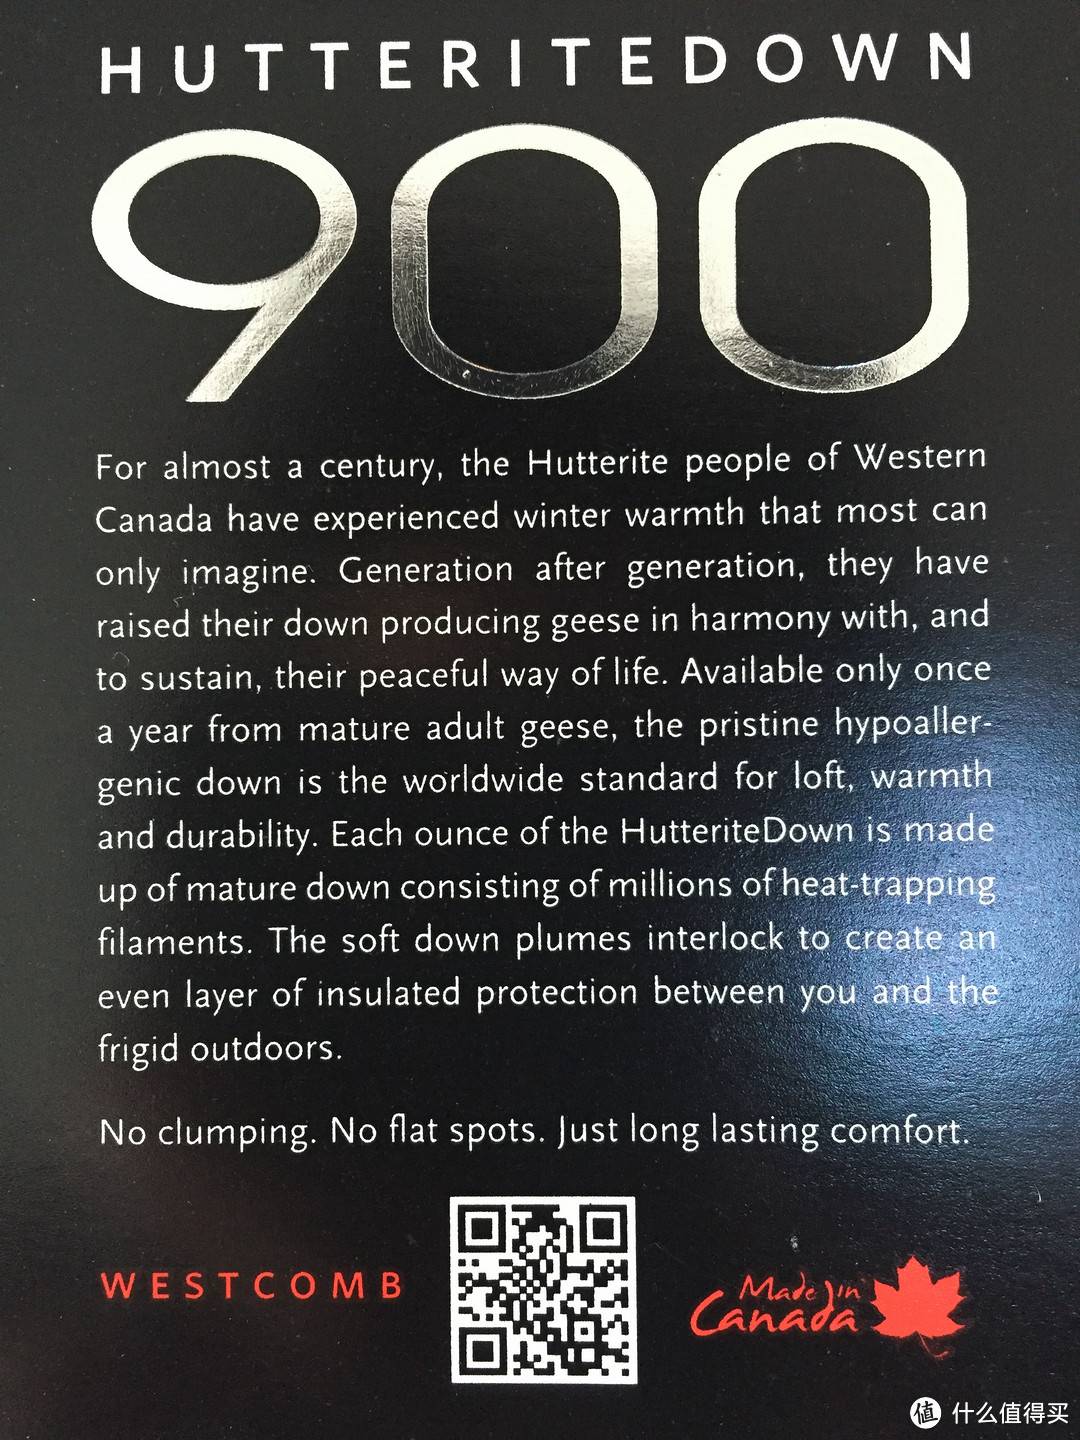 加拿大 Westcomb Chilko 900蓬 羽绒服 晒单